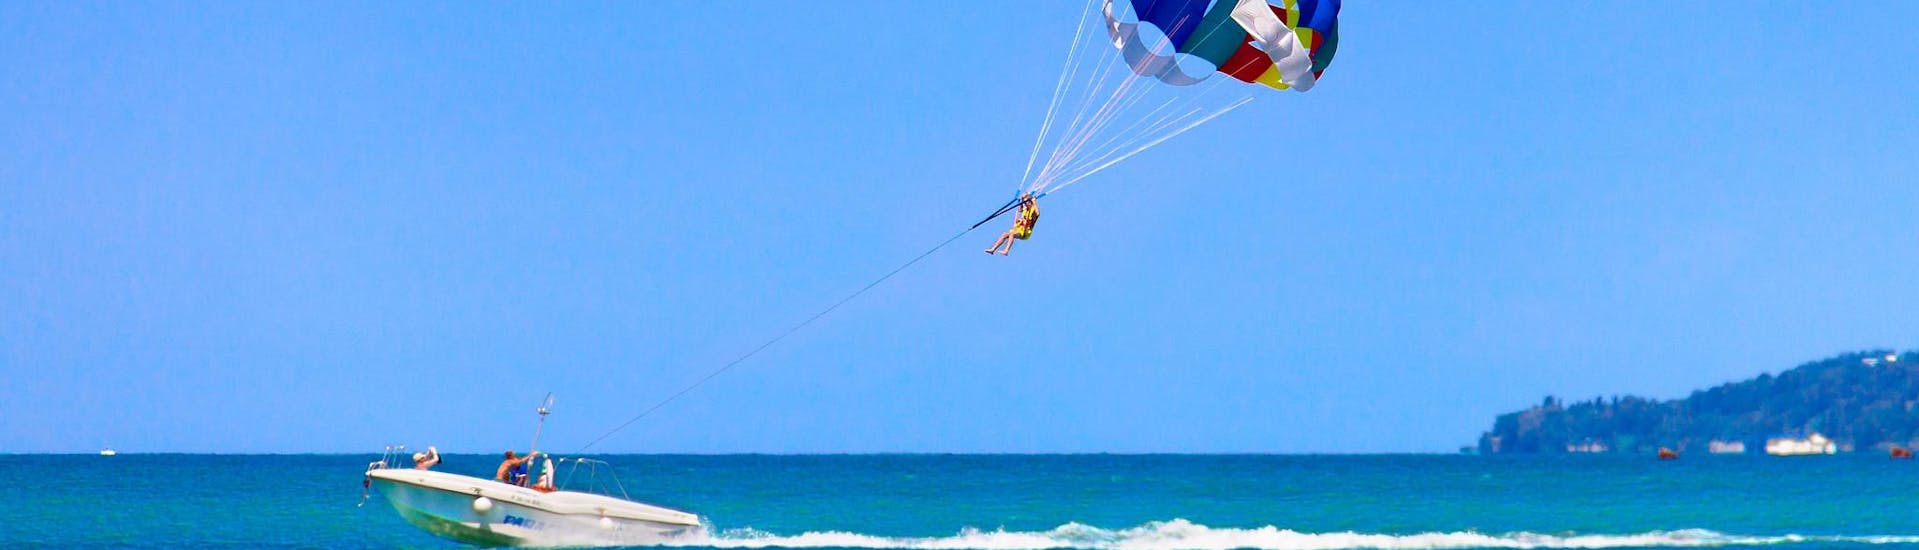 Una persona divirtiéndose durante una actividad de parasailing.